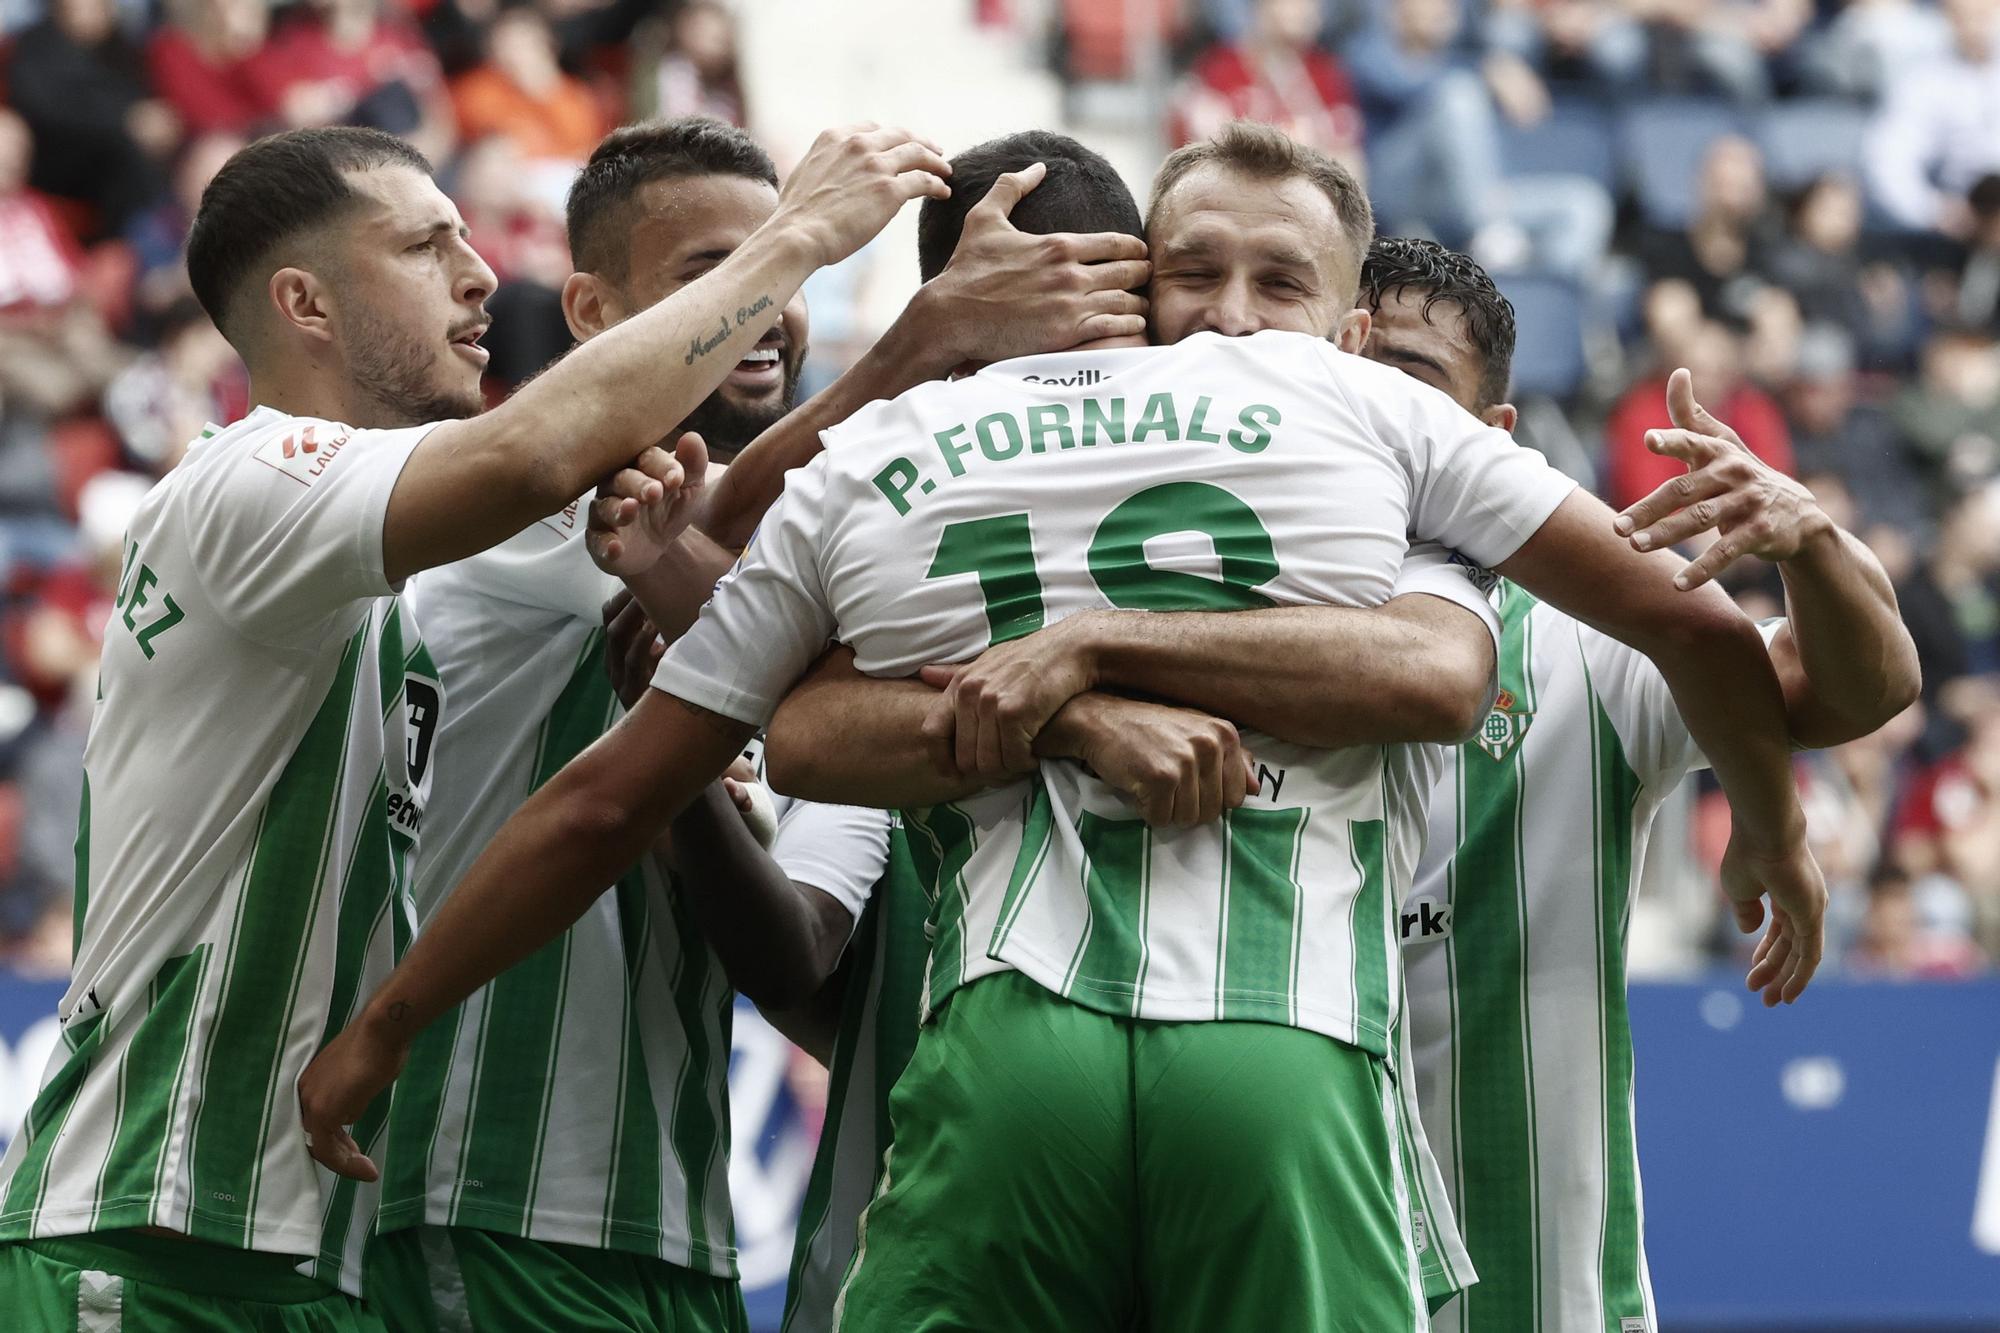 El jugador del Real Betis Pablo Fornals celebra con sus compañeros tras marcar el 0-2 contra el Osasuna. / EFE - Jesús Diges